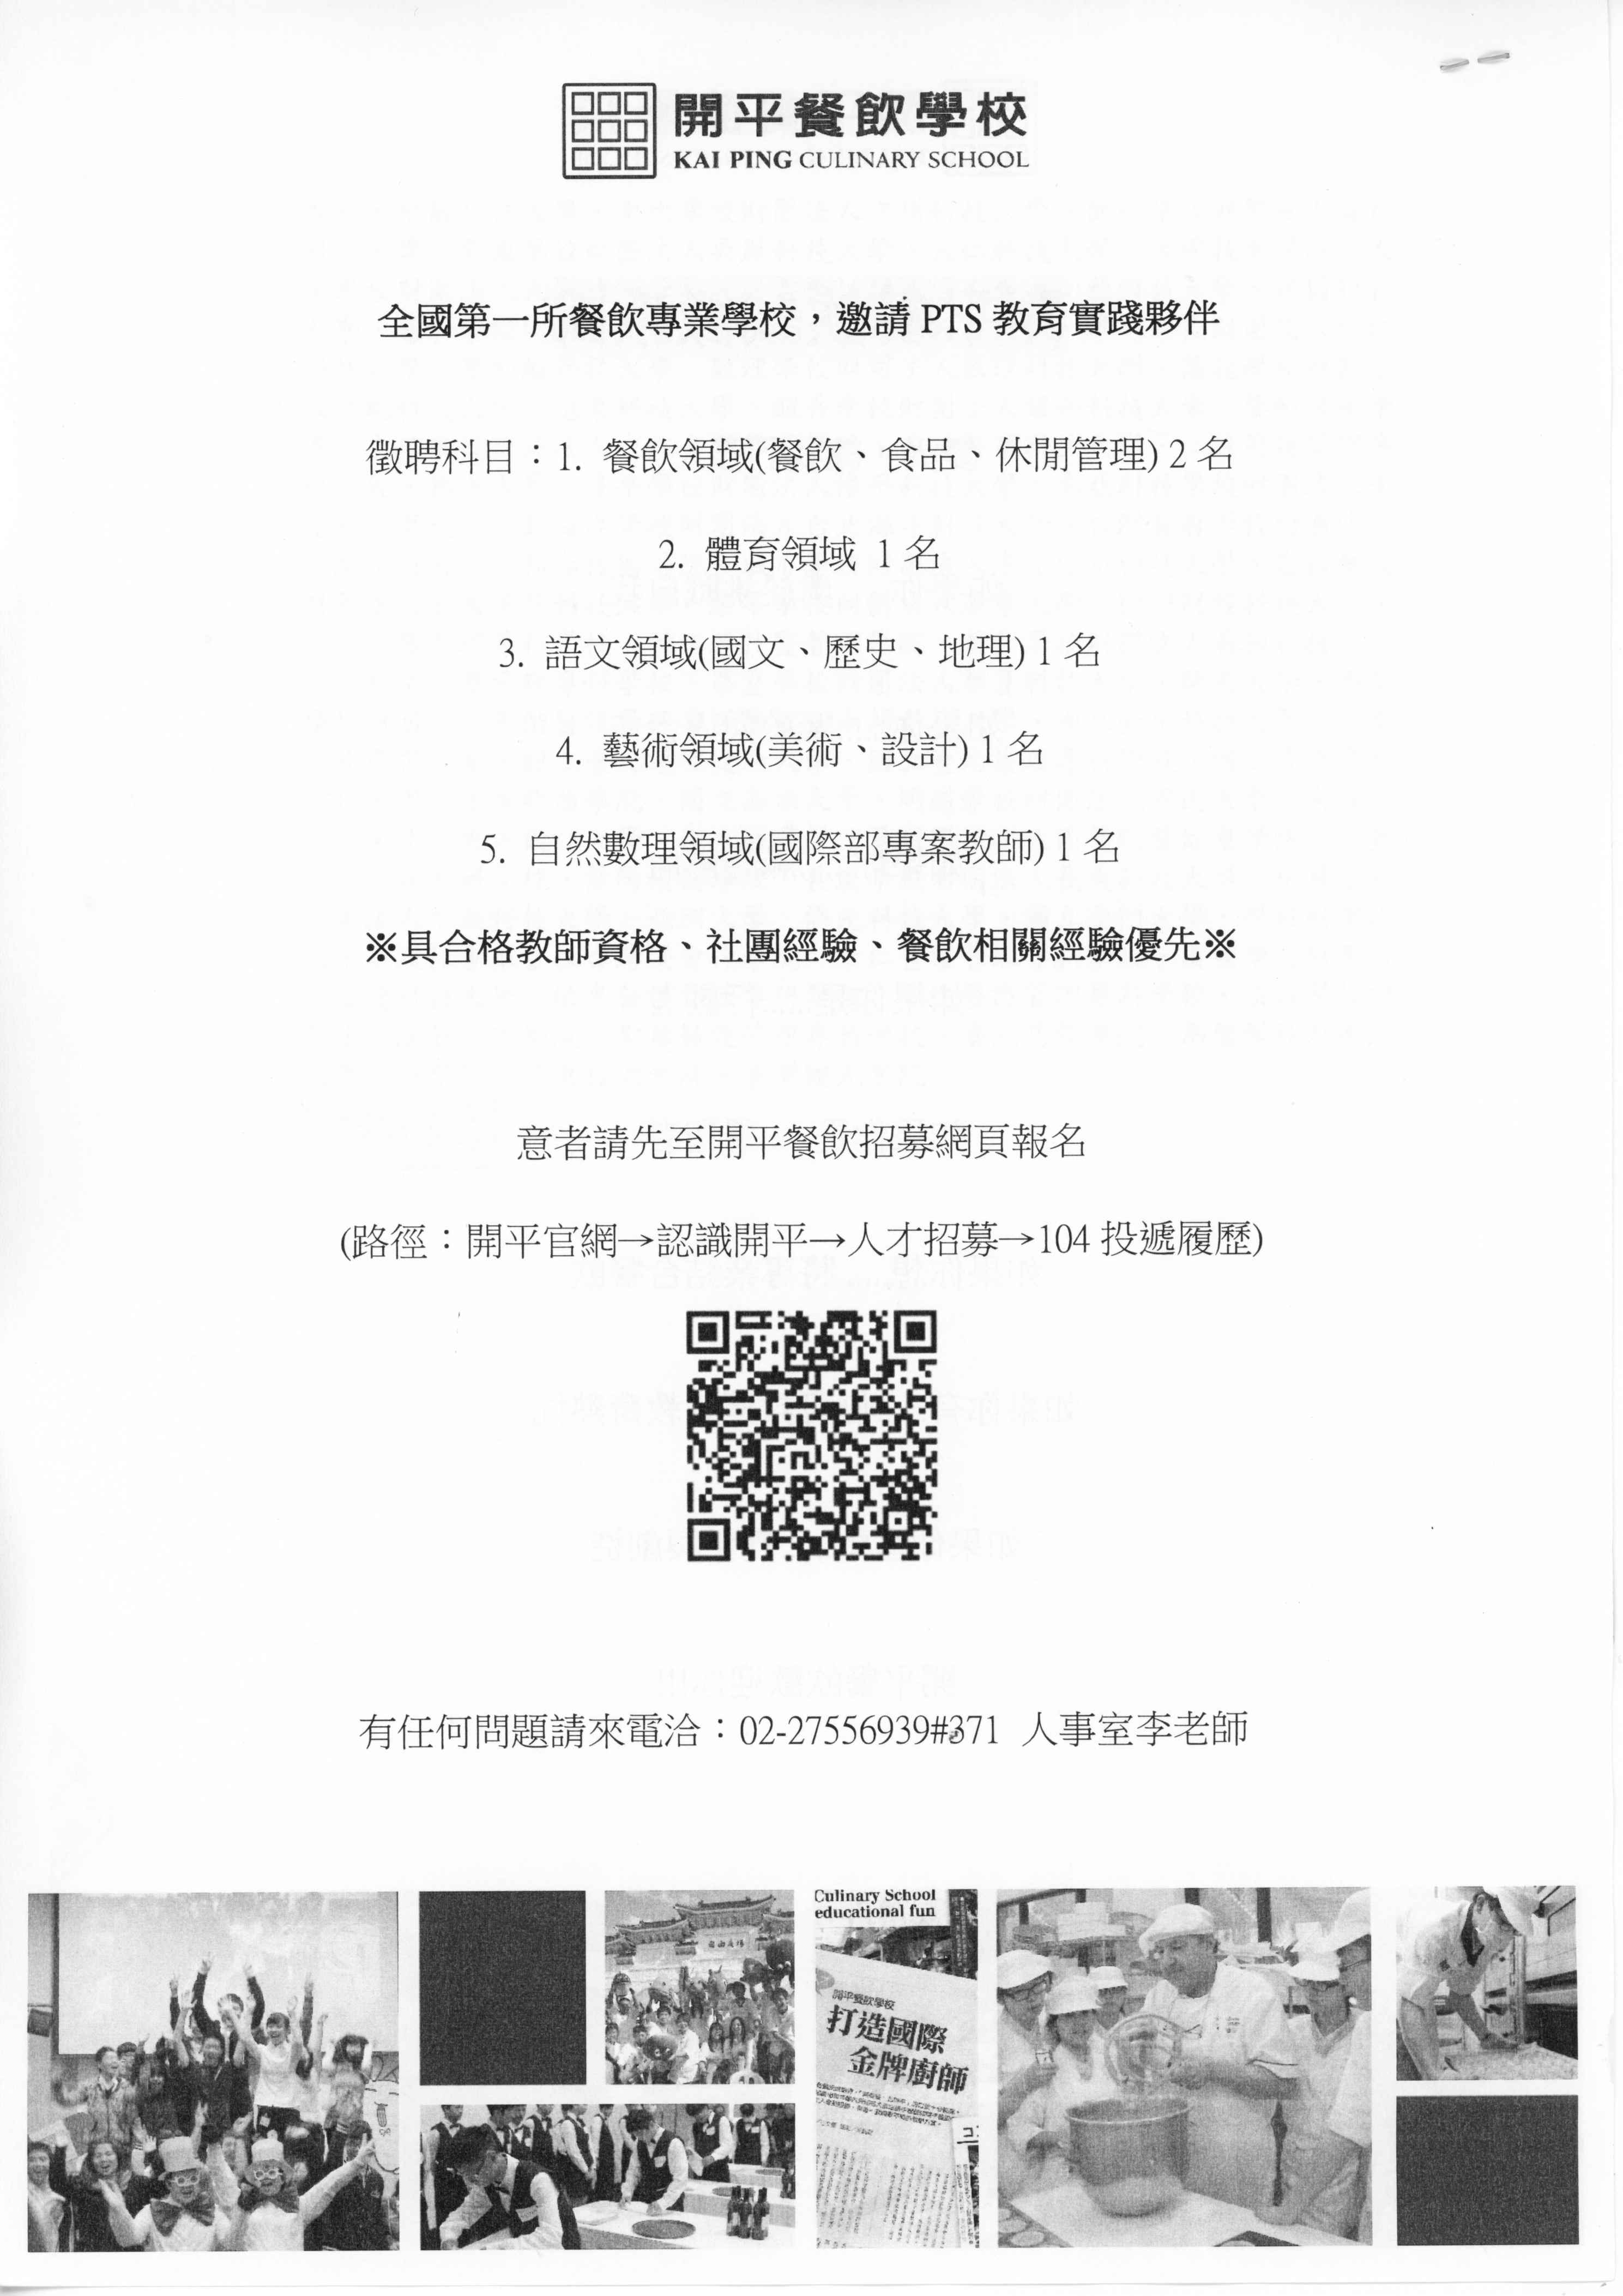 111年度 臺北市 私立開平餐飲職業學校 教師徵選 開平餐飲招募官網報名